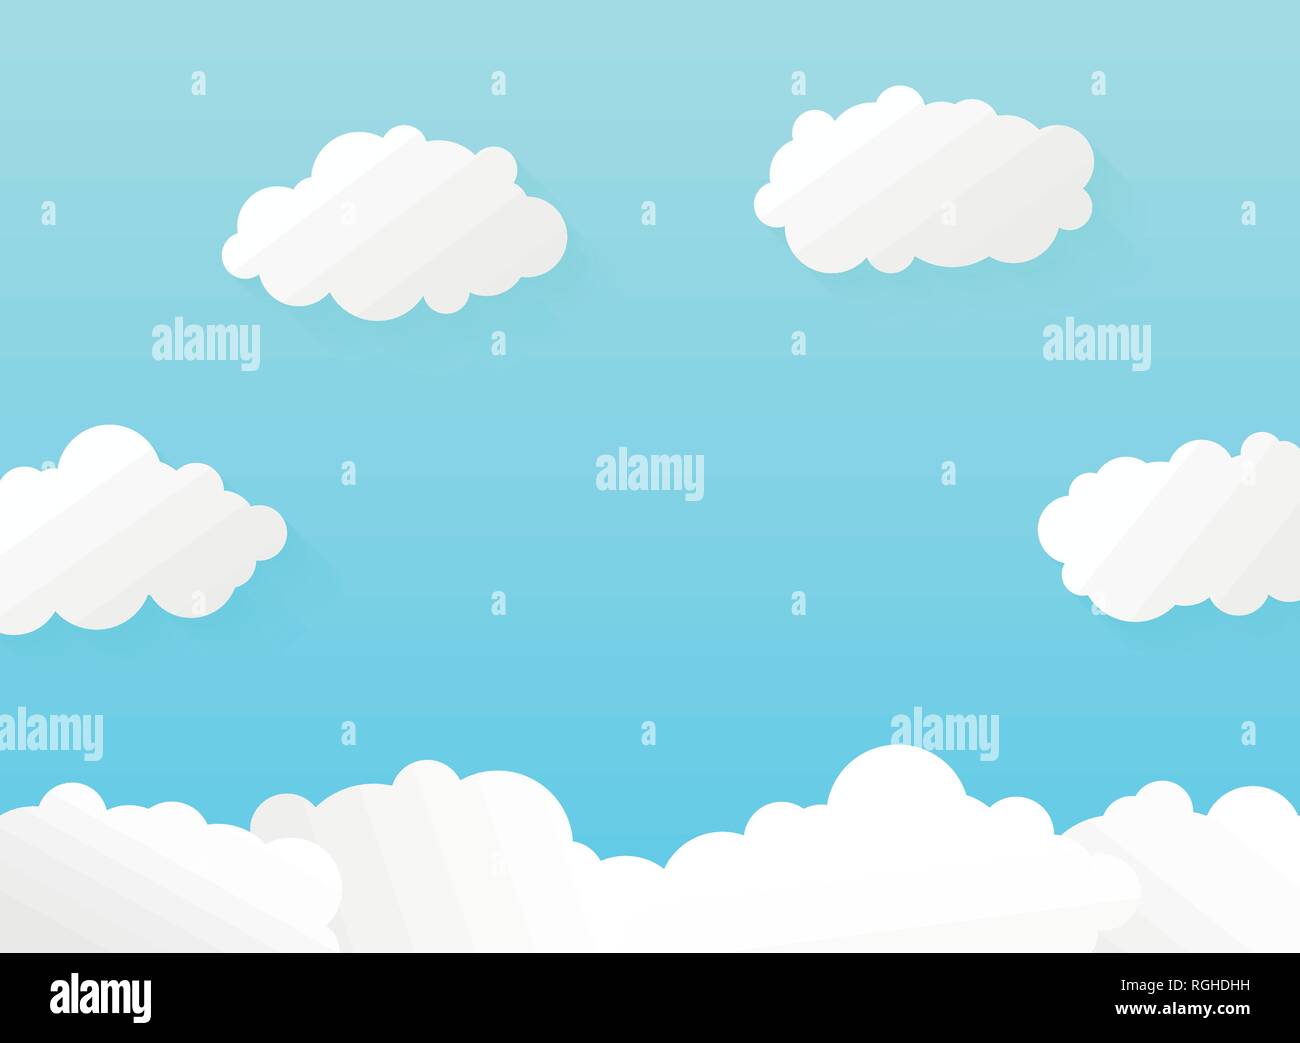 Abstrakte lebendige Gradient blue sky mit weichen Wolken pattern Design. Sie können sich für die Kunst arbeiten, ad, Posters, Deckblatt, Web, Bericht. Vector EPS 10. Stock Vektor